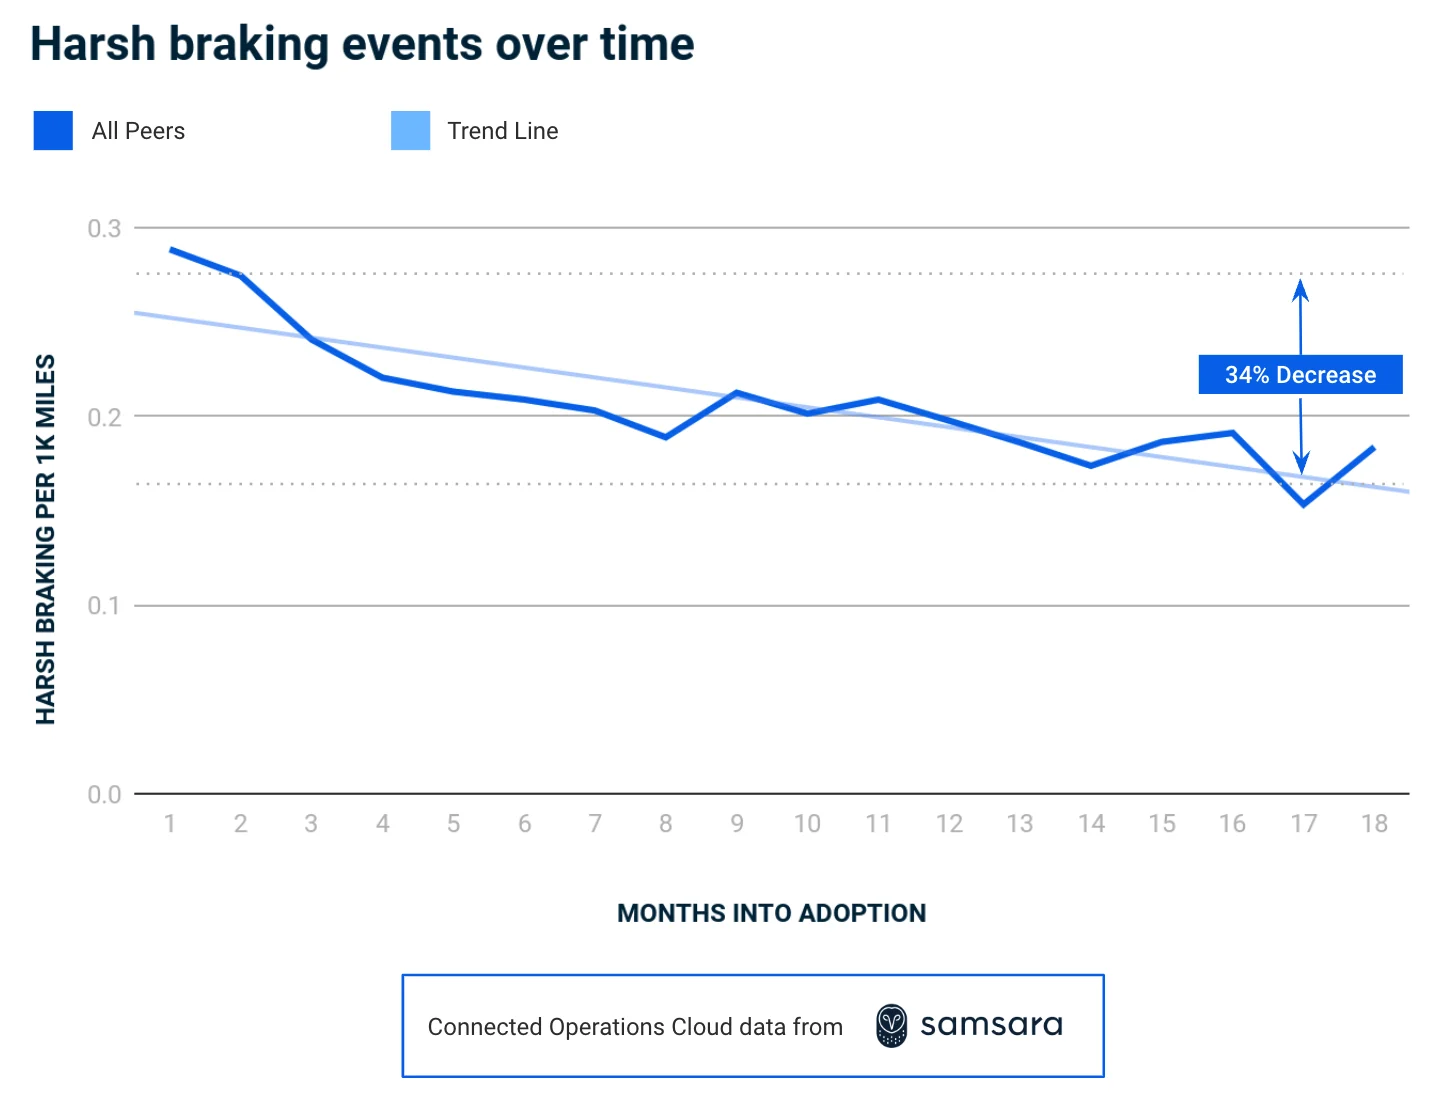 Graph showing harsh braking data